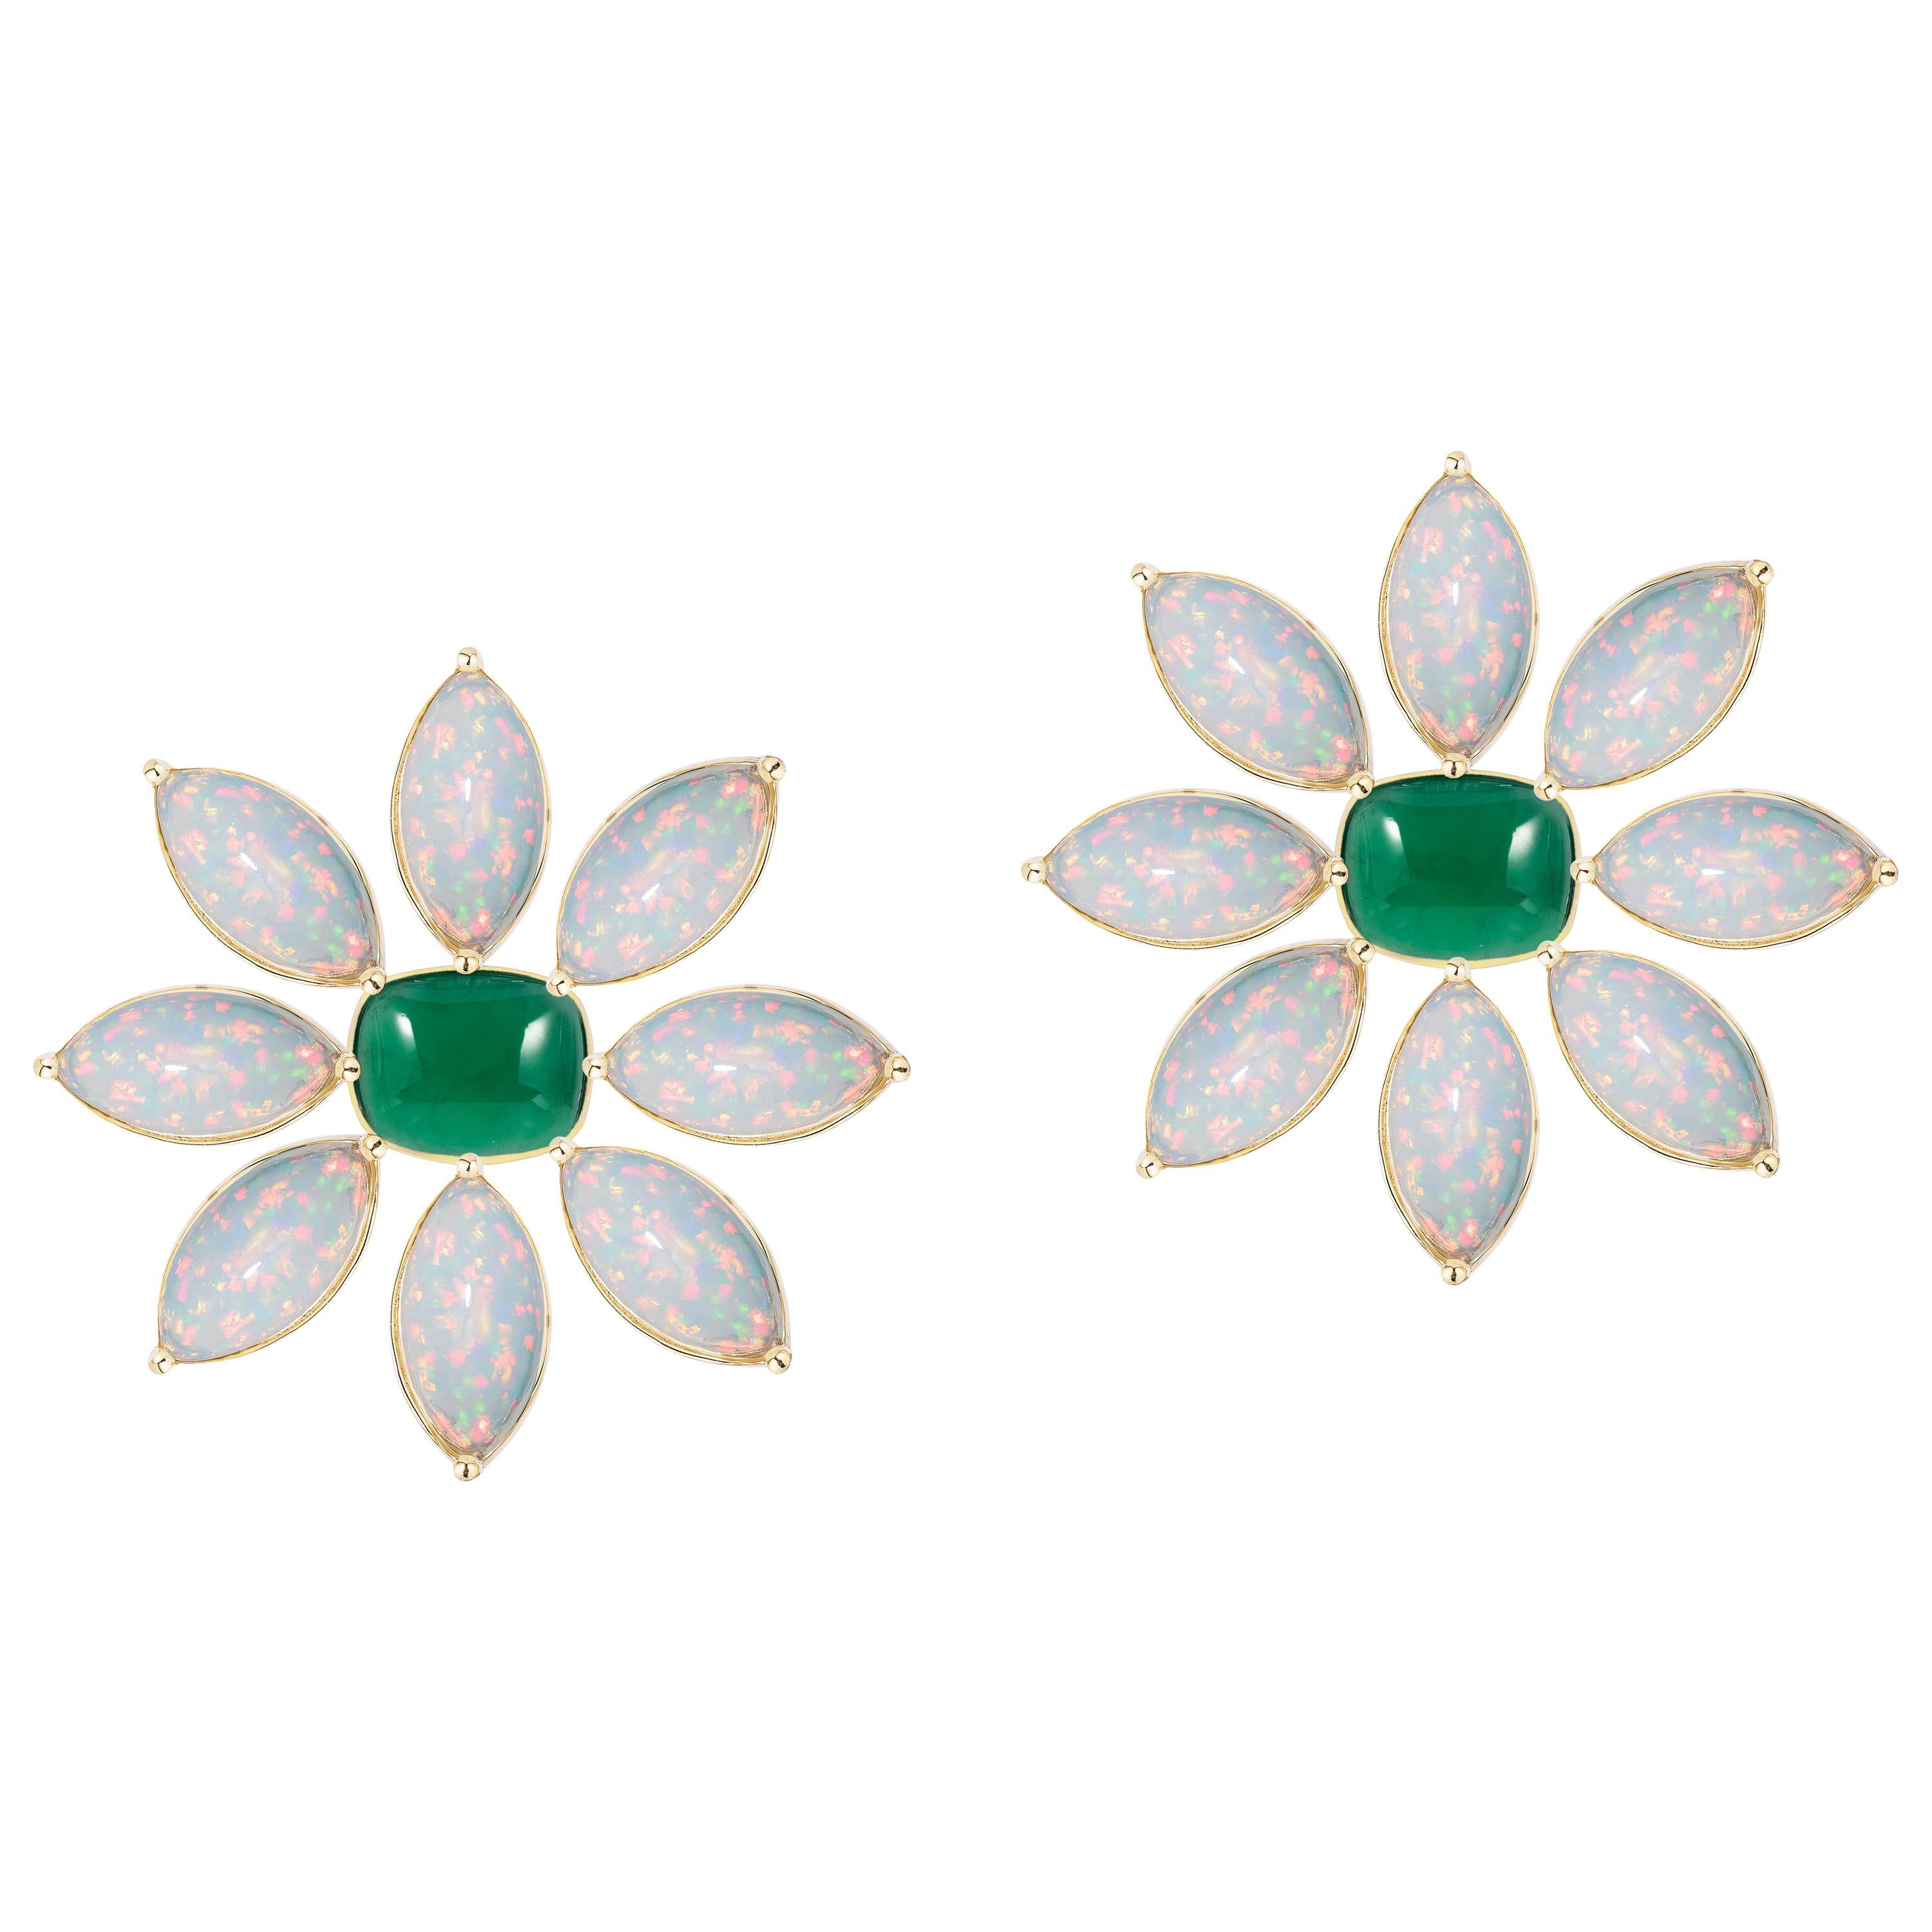 Goshwara Emerald Cushion Cab and Marquise Opal Earrings